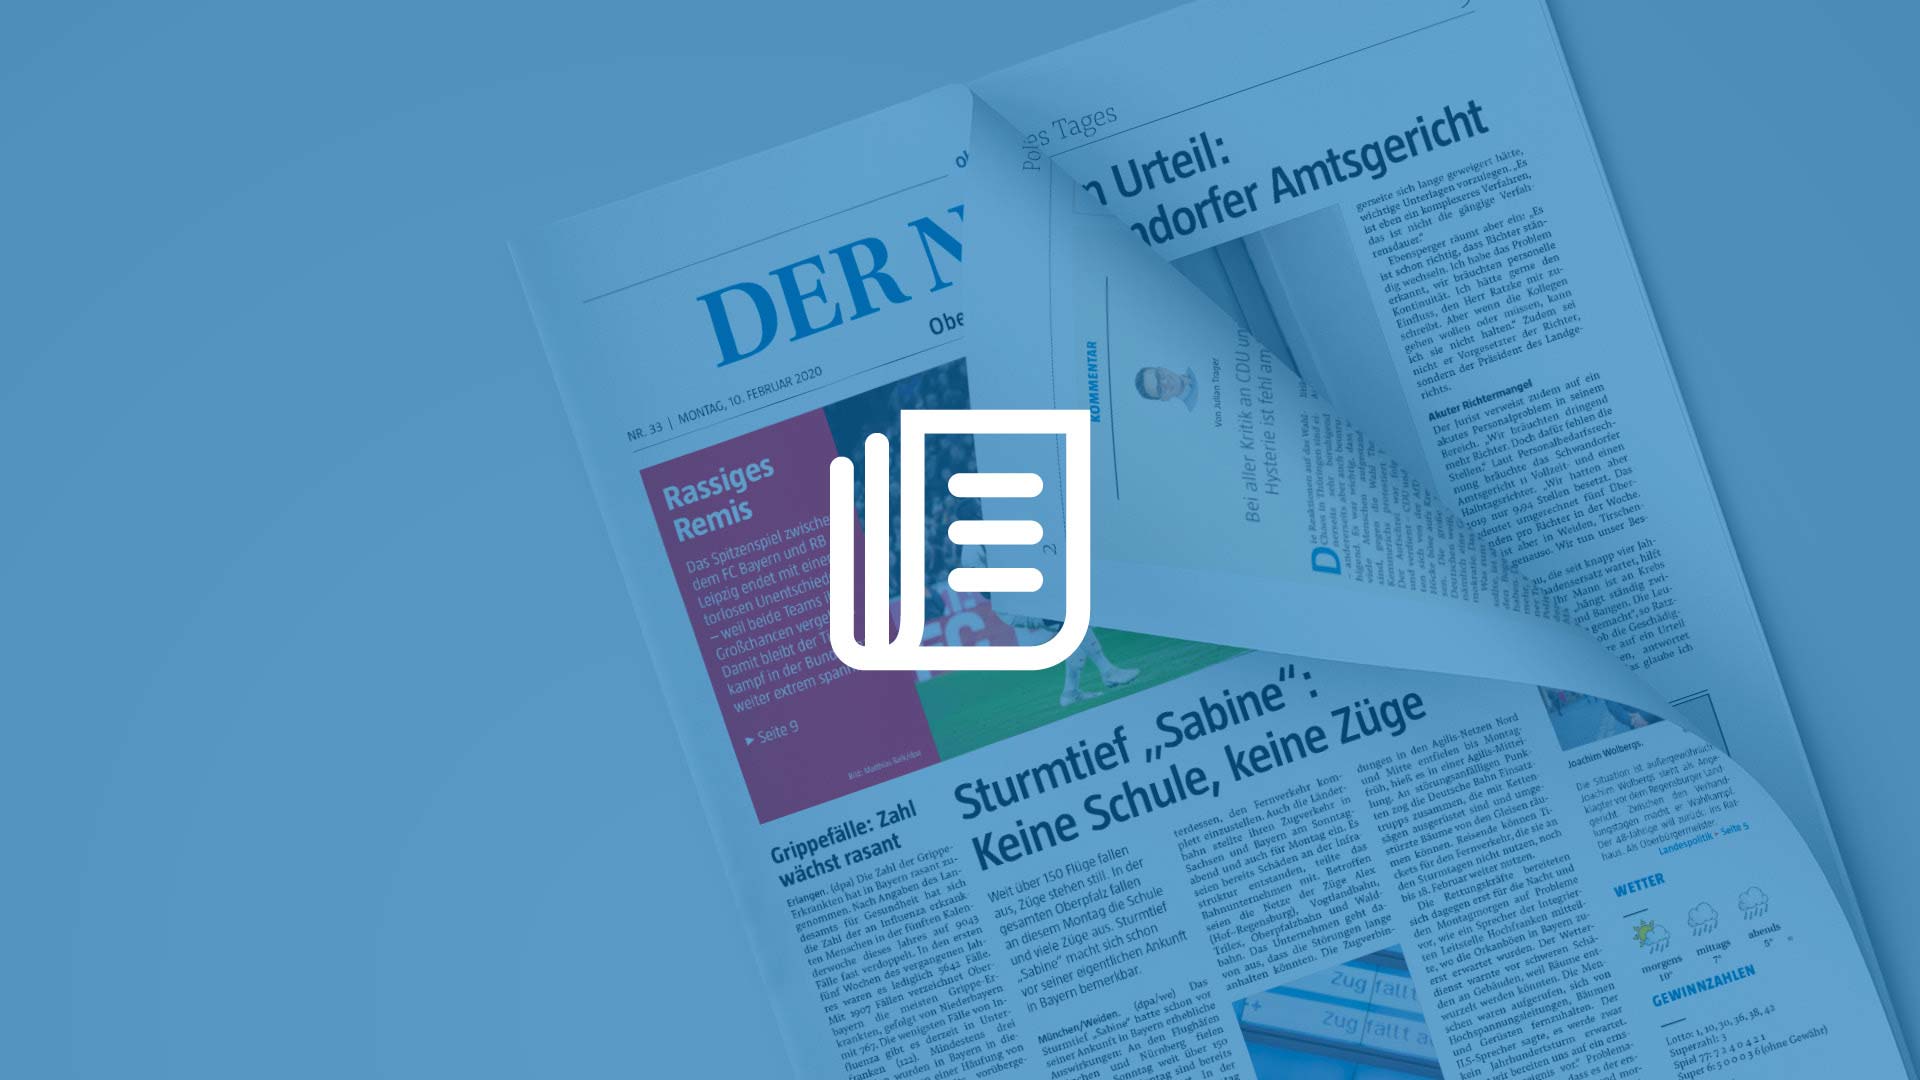 Transparente blaue Fläche mit weißem Icon für Zeitung, darunter aufgeschlagene Titelseite der Oberpfälzer Wochenzeitung.